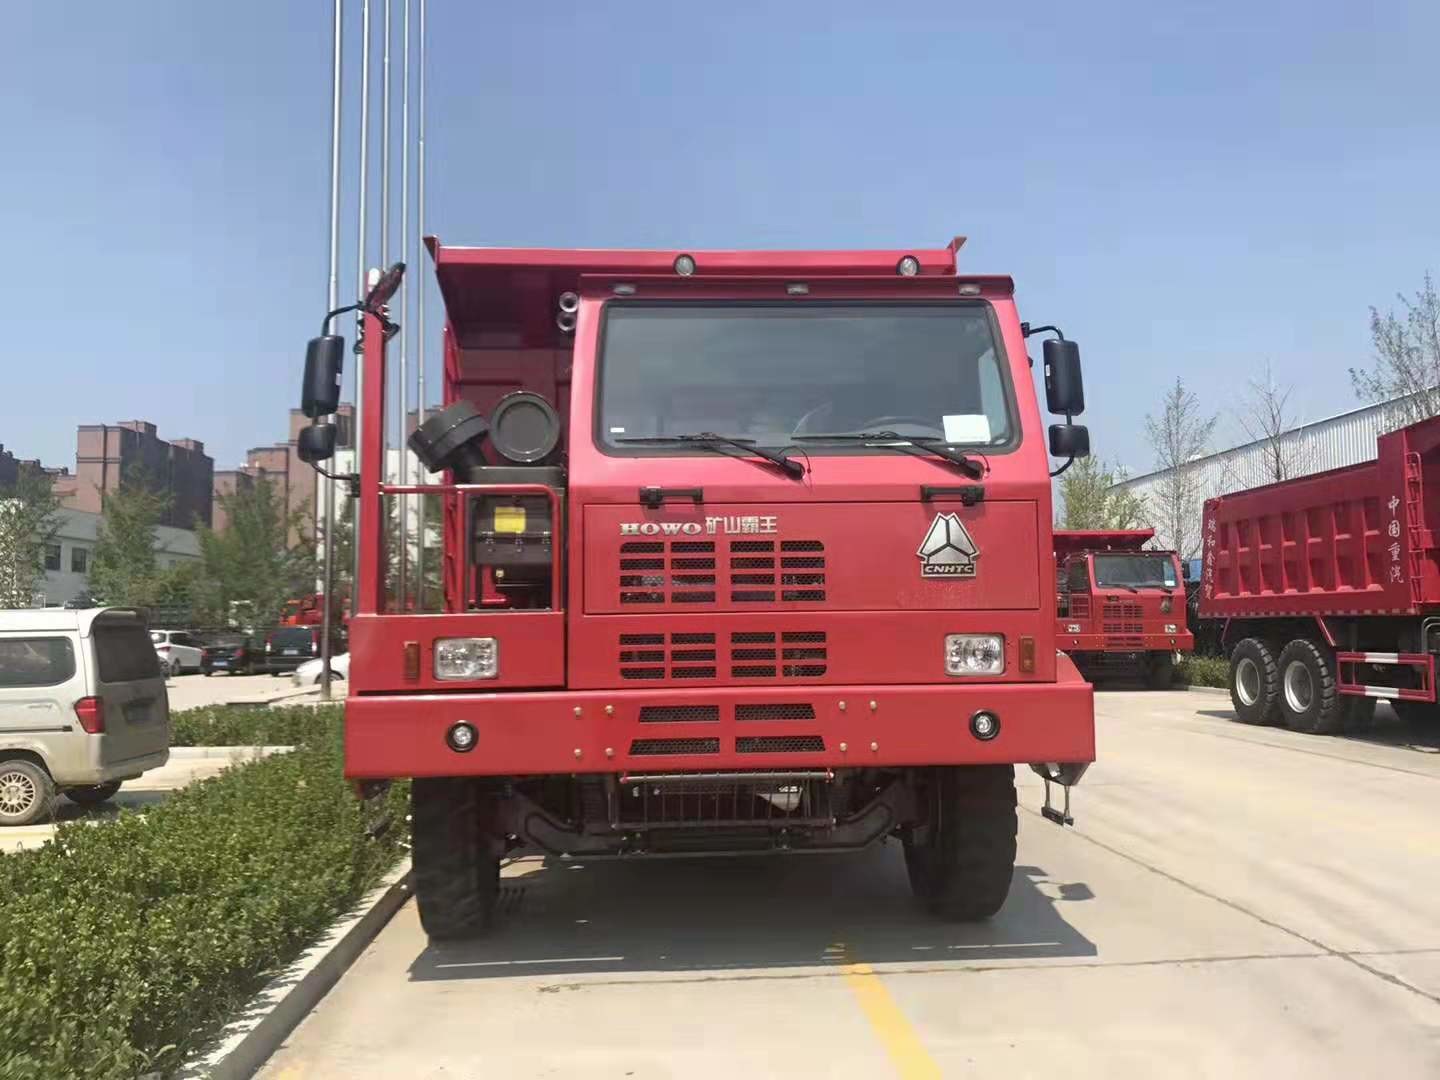 De Stortplaatsvrachtwagen 6*4 van de rode Kleuren Zware Mijnbouw/Handtransmissietype 30 van de Kipperston Vrachtwagen